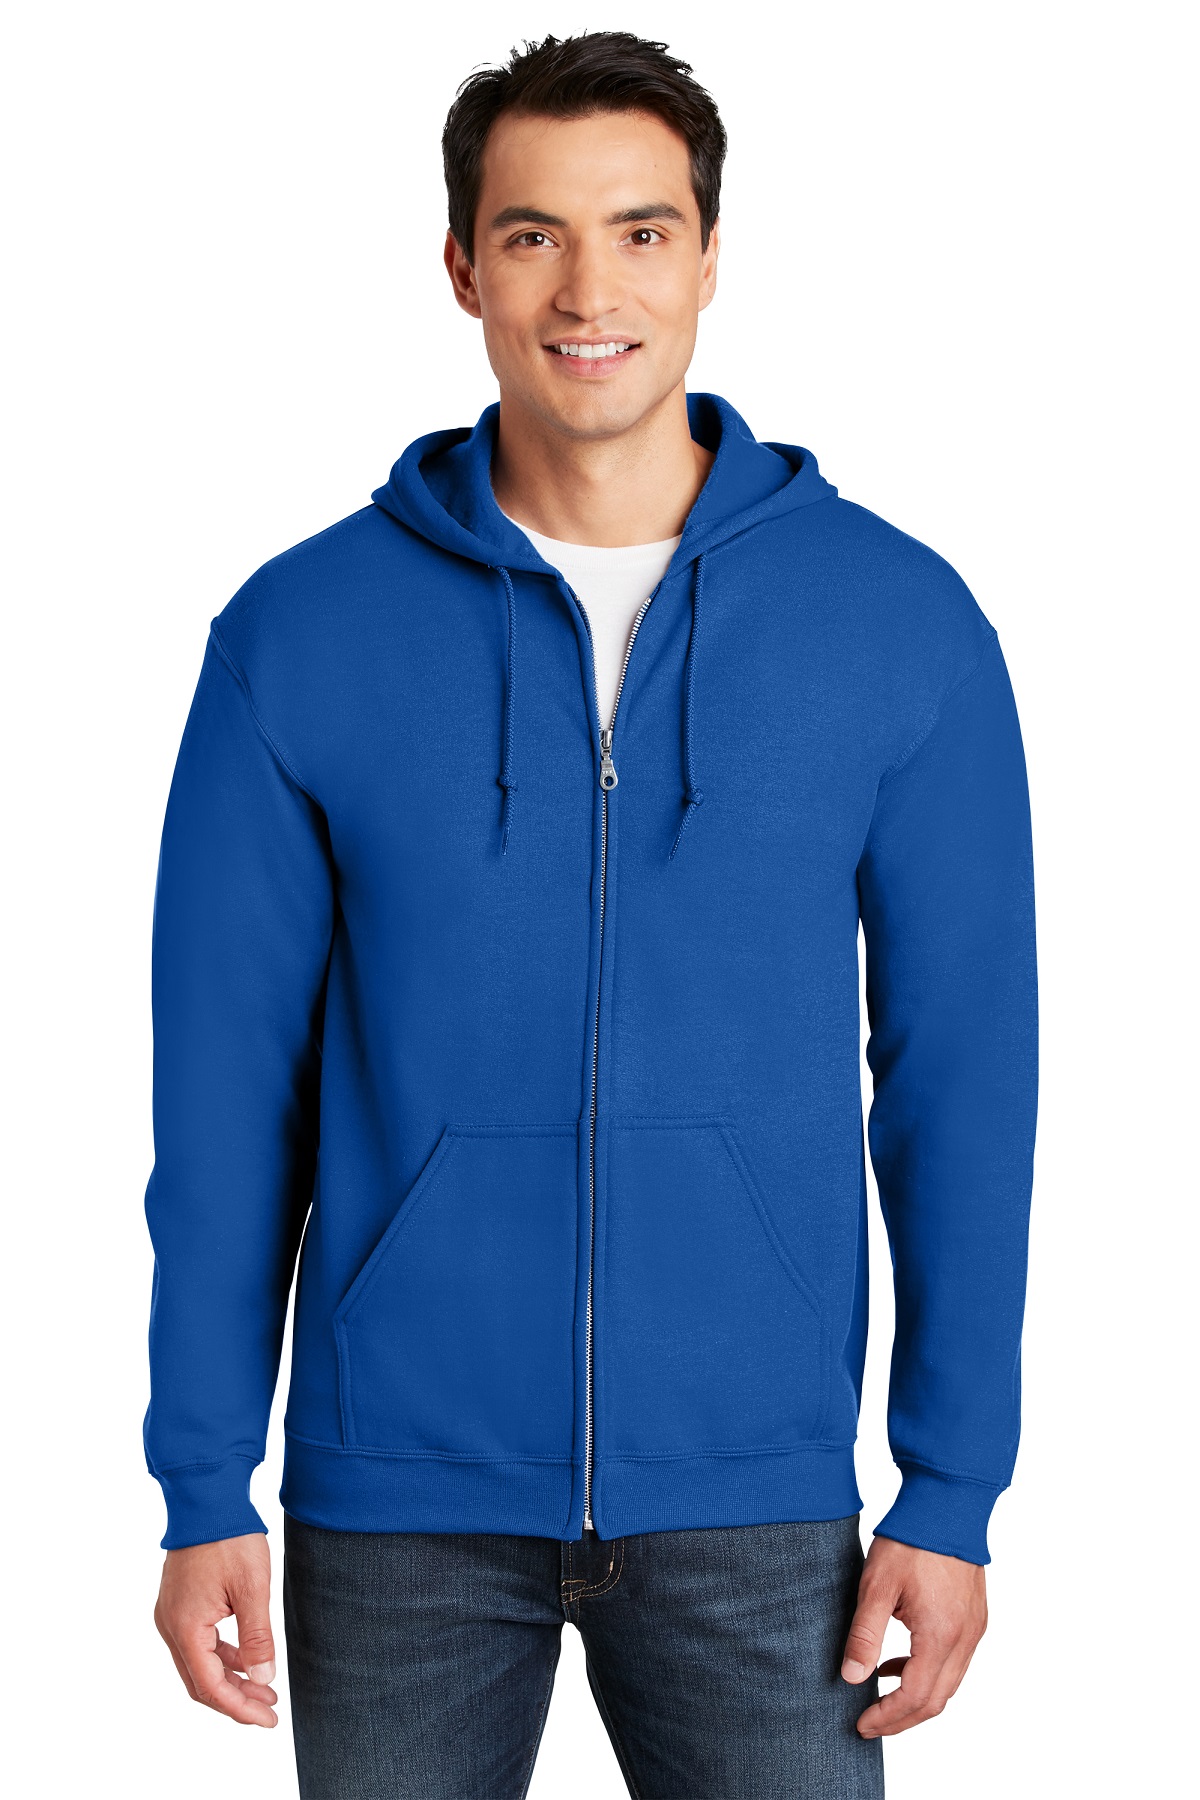 Gildan Embroidered Men's Full Zip Hooded Sweatshirt - Queensboro